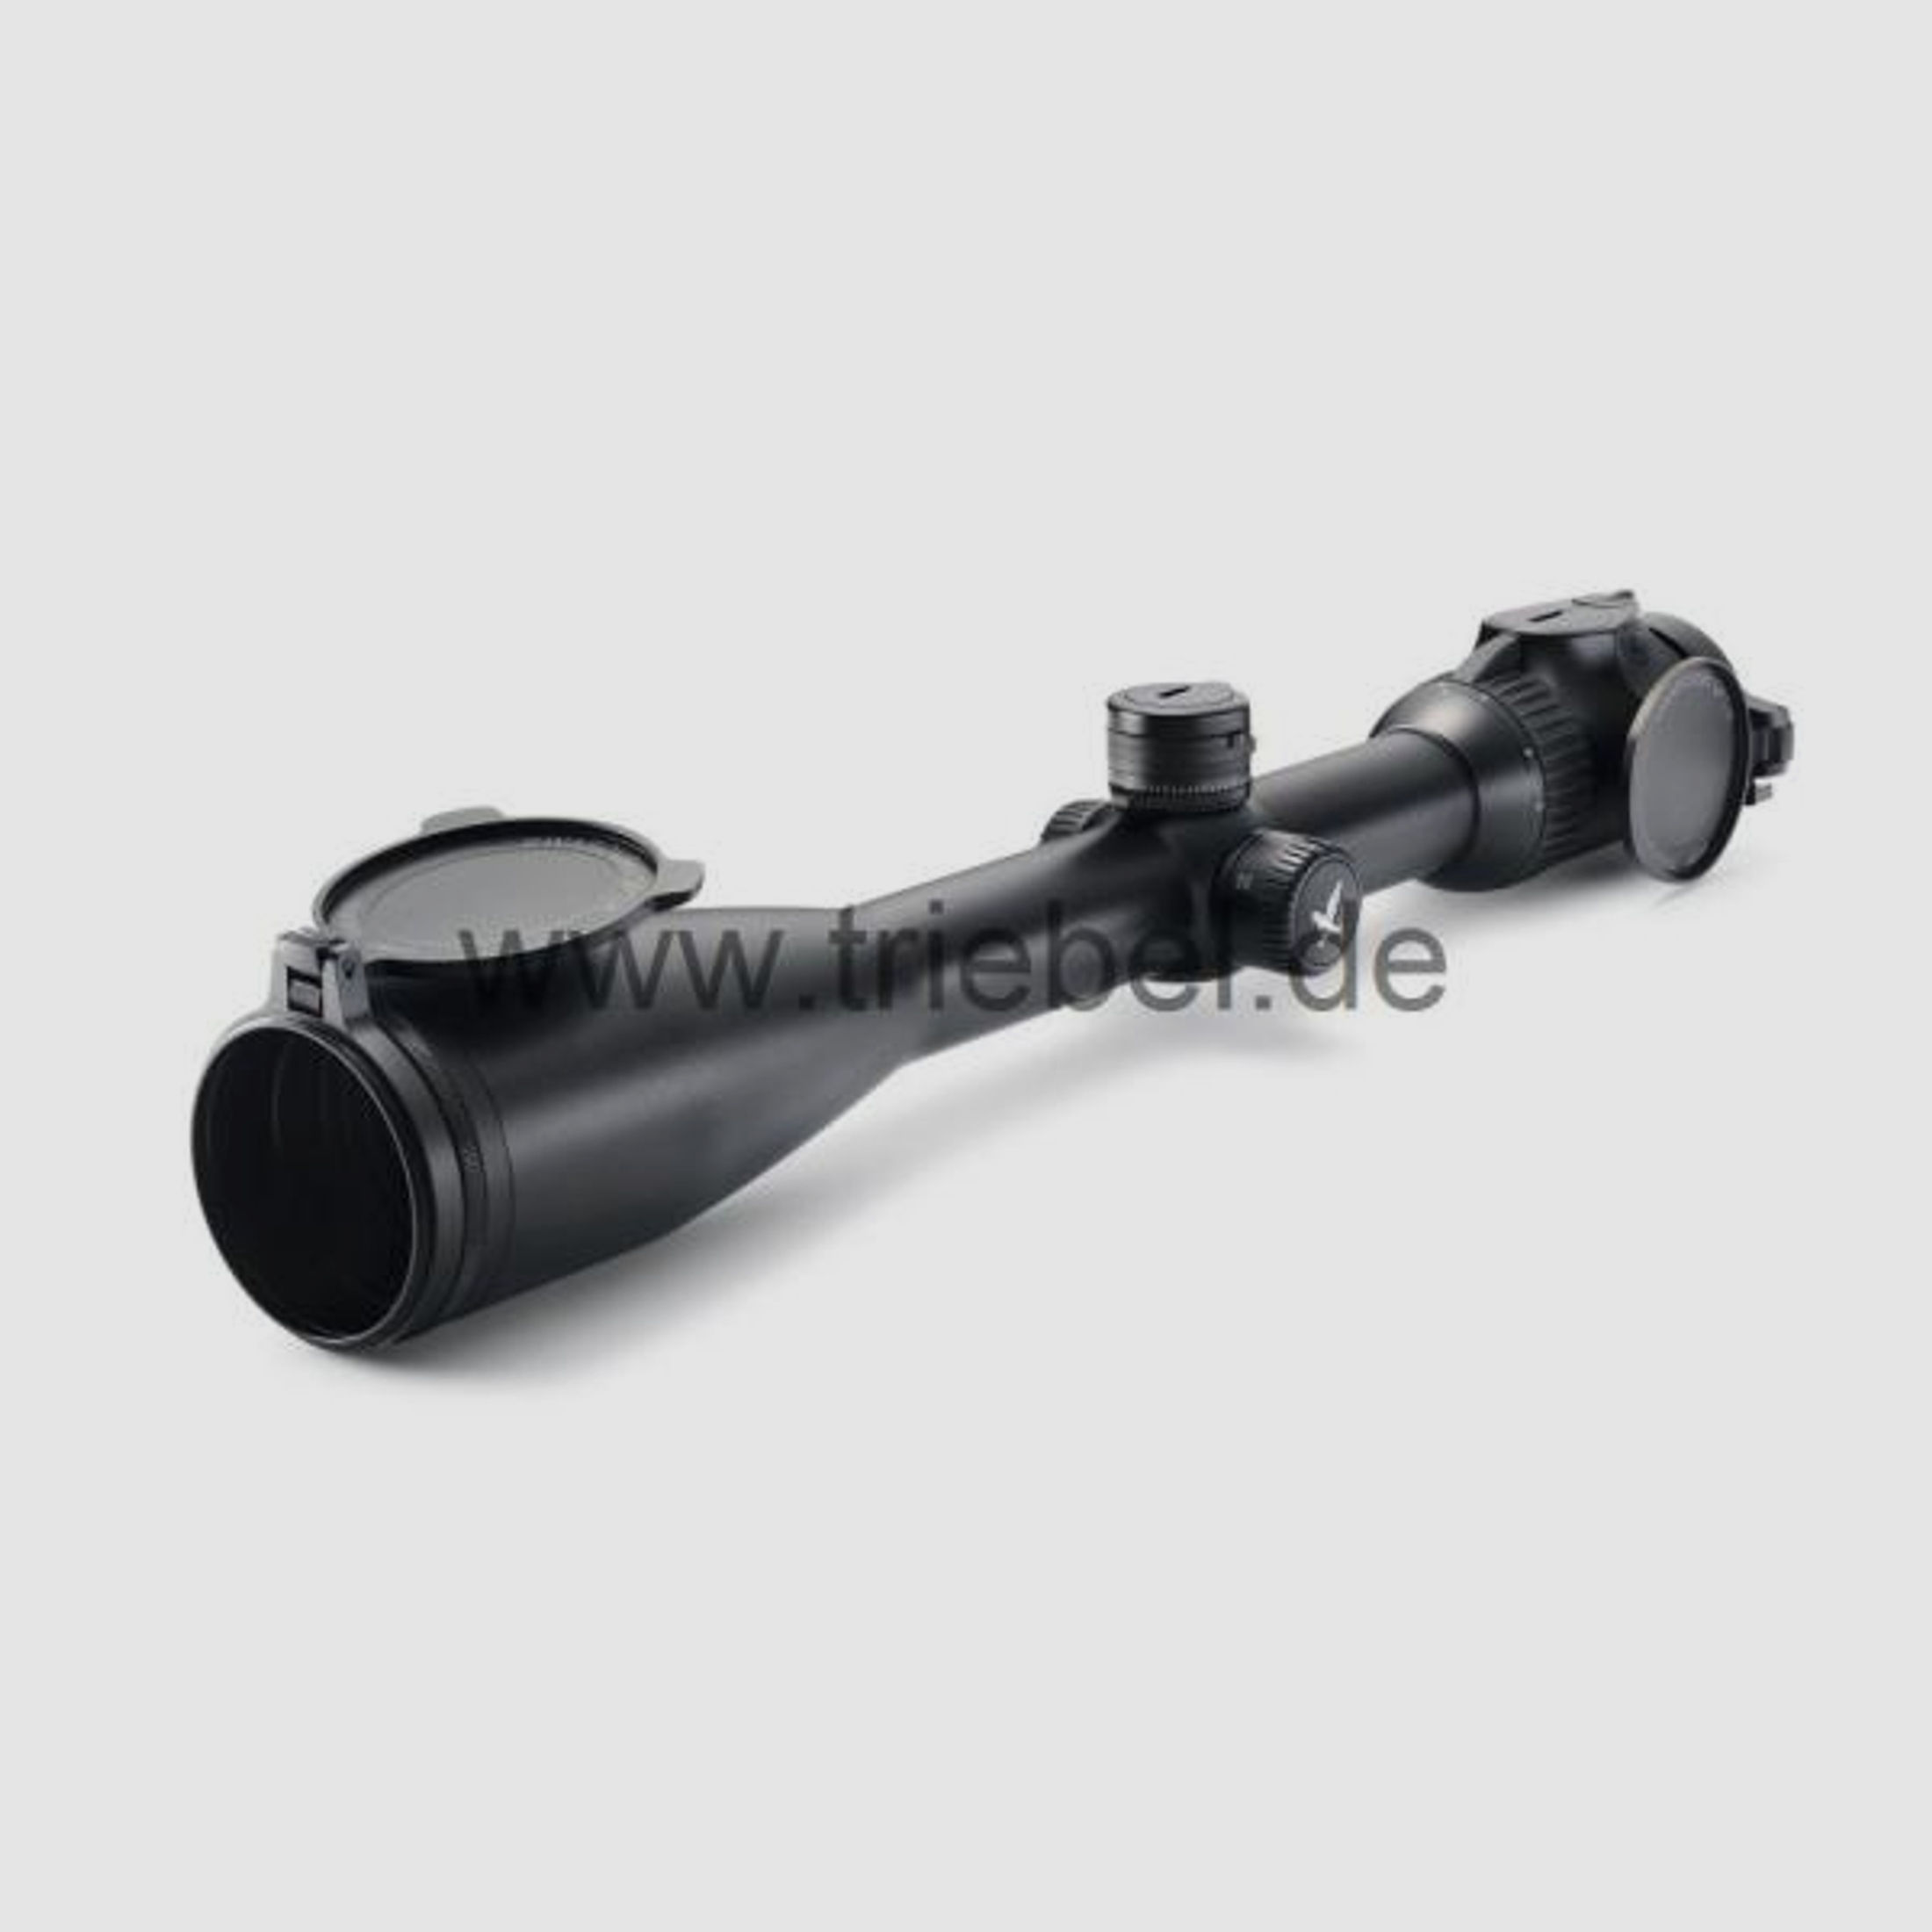 SWAROVSKI Zubehör für Zielfernrohre Objektivdeckel 56 mm SLP-O-56 f. Z8i, Z6(i), Z5, Z3, X5(i)